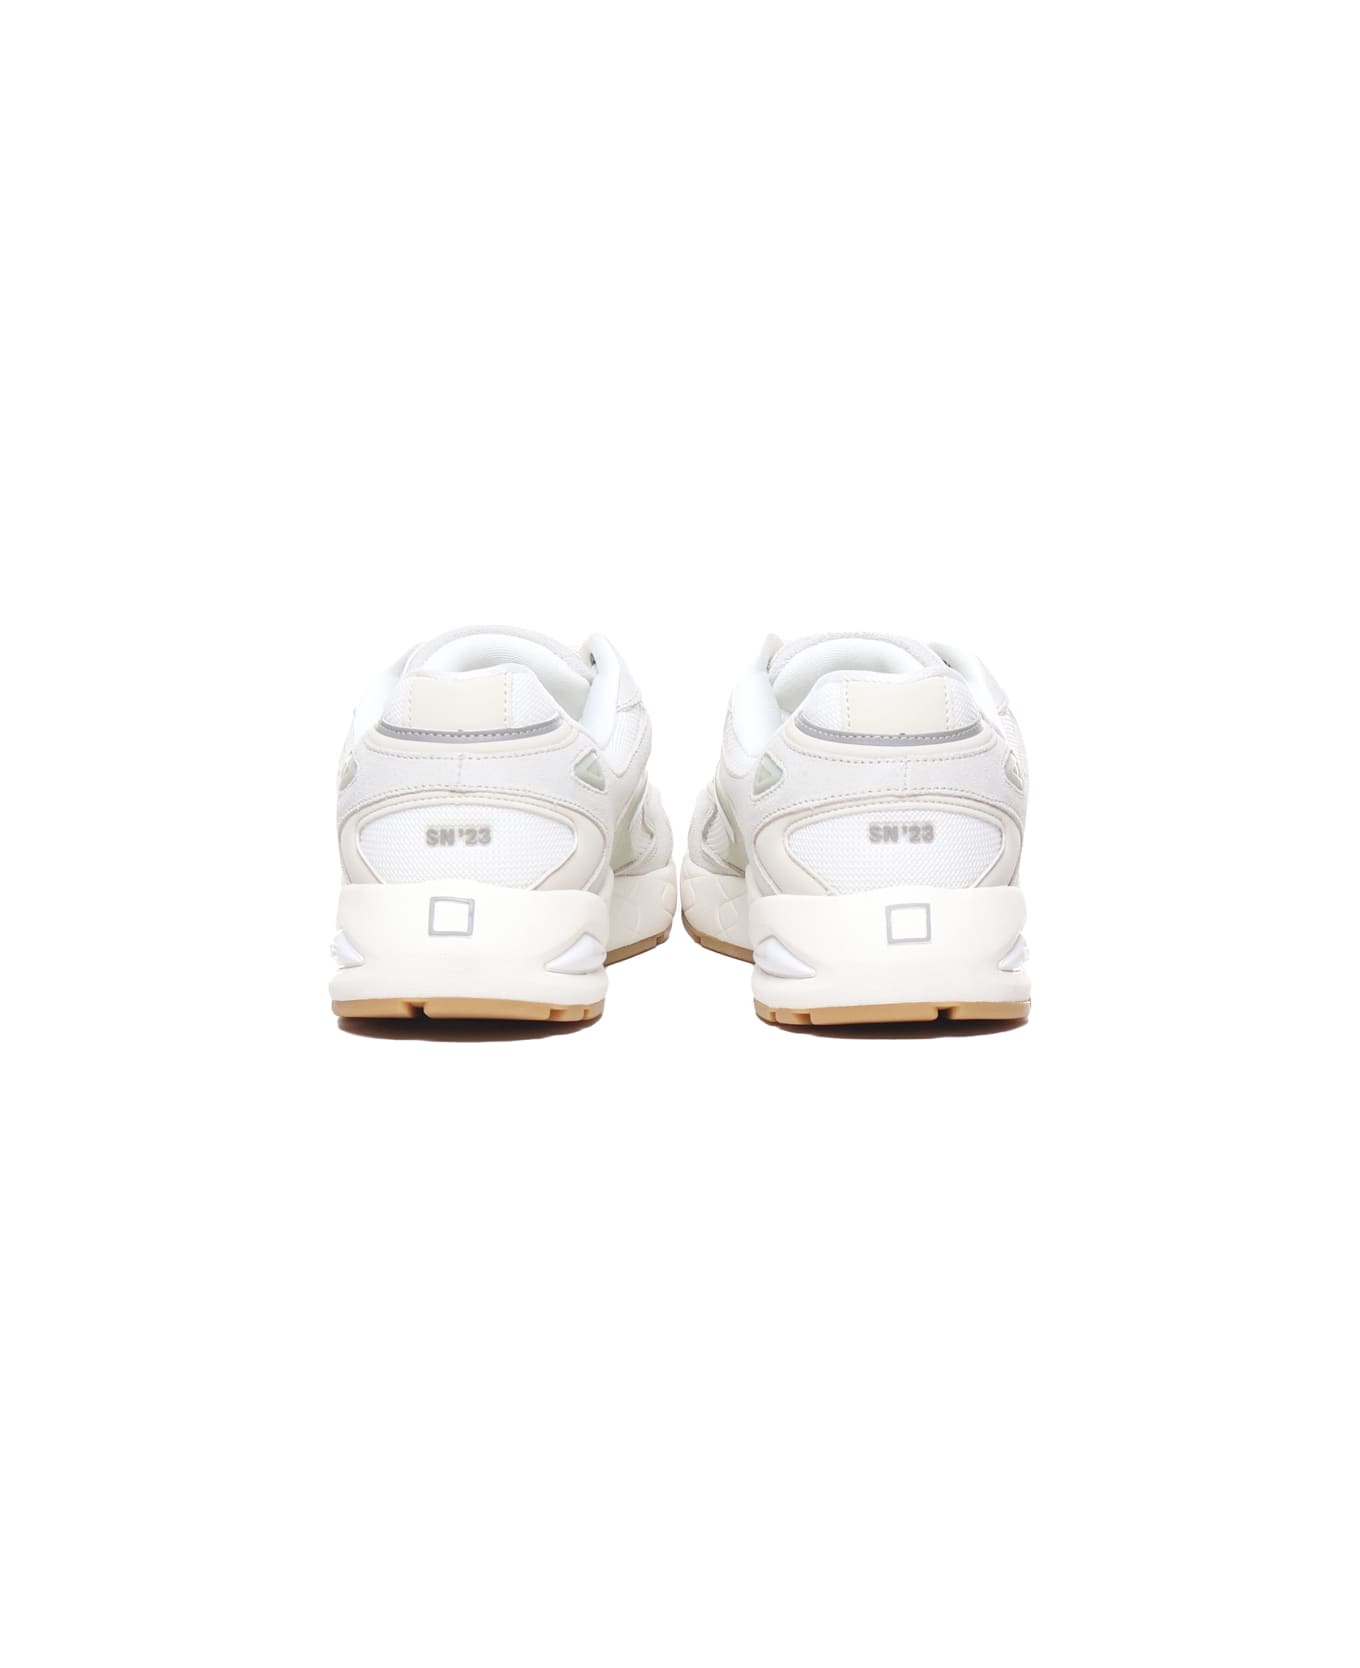 D.A.T.E. Sn23 Sneakers - White